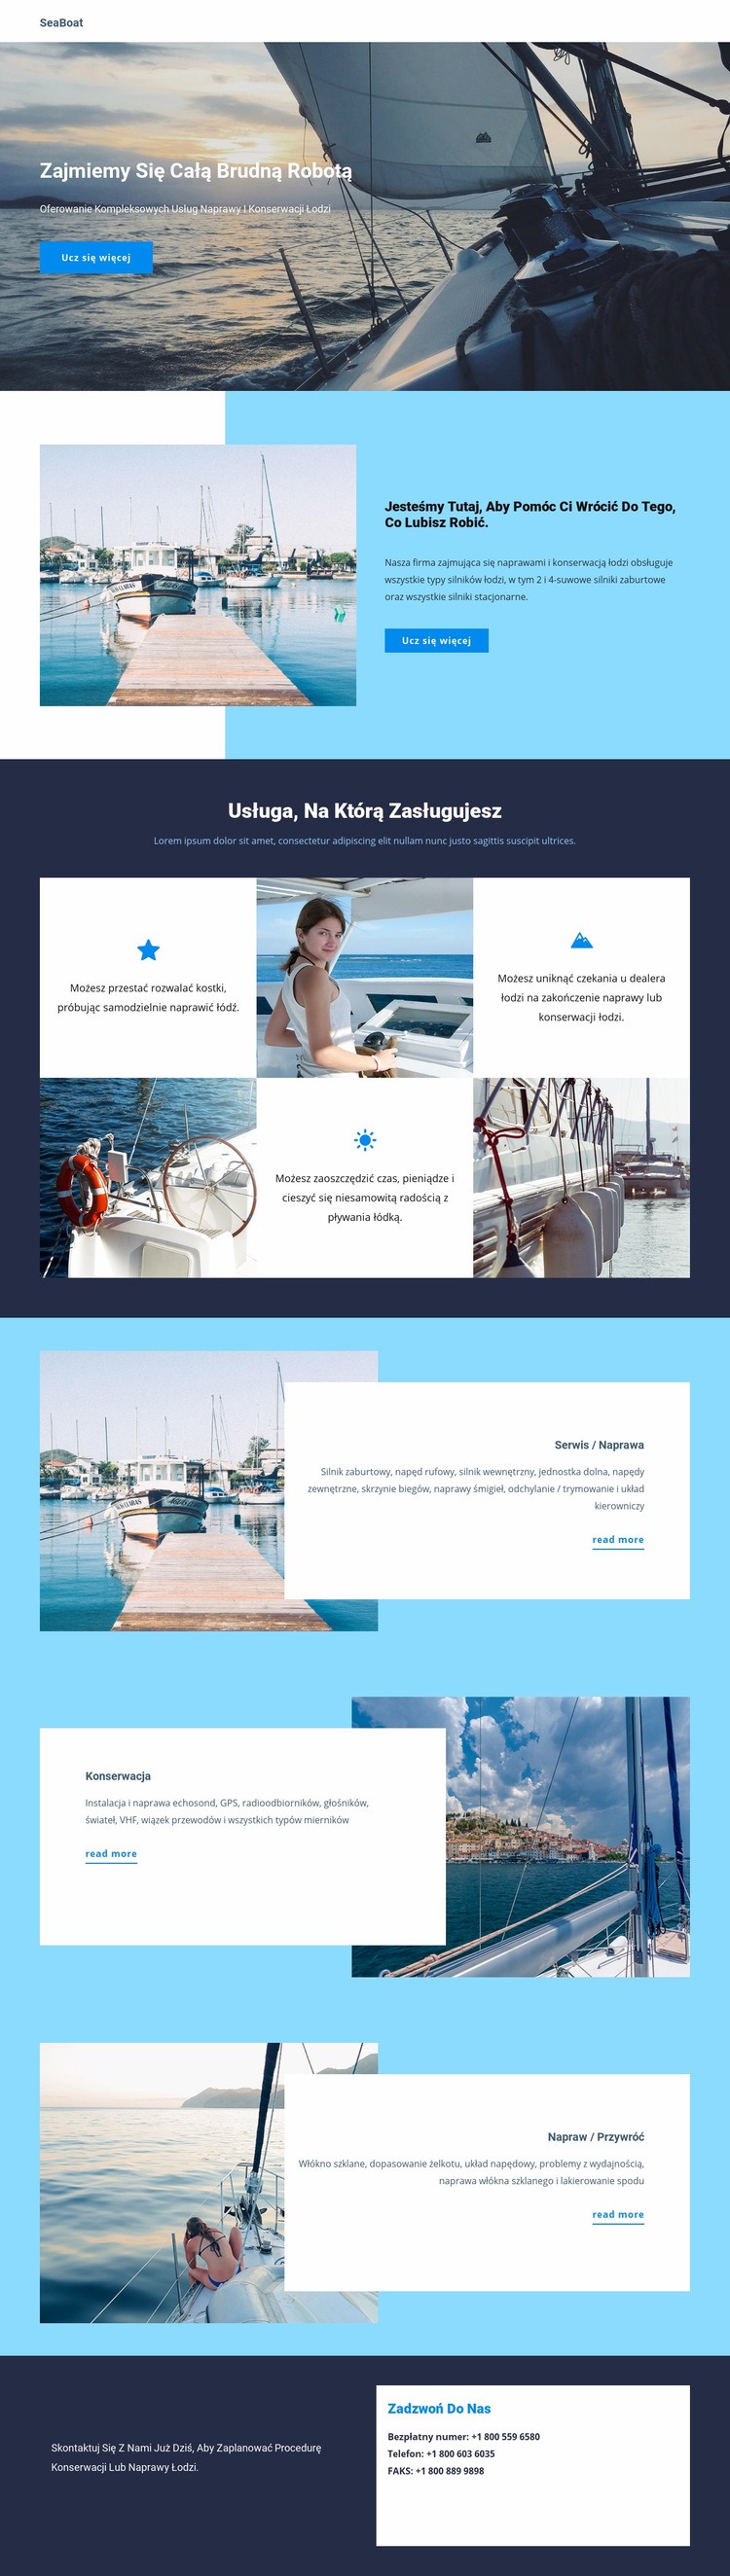 Podróżuj po Seaboat Szablon HTML5